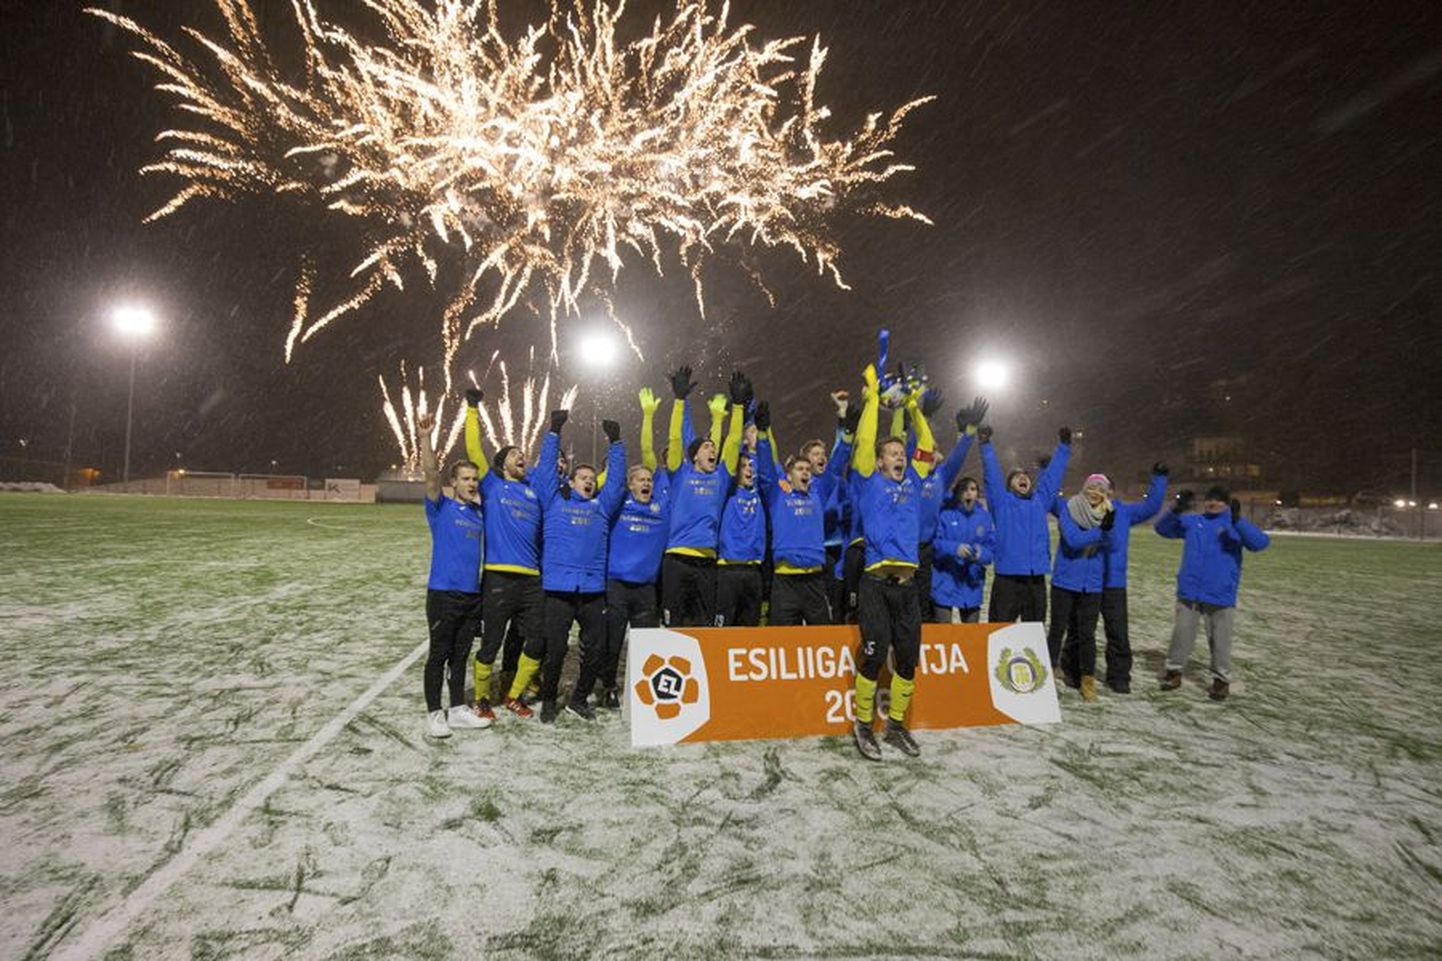 Pühapäeval rõõmustasid Viljandi jalgpalliklubi Tulevik esindusmeeskonna mängijad koos poolehoidjatega Eesti meistrivõistluste esiliiga võidutrofee üle.